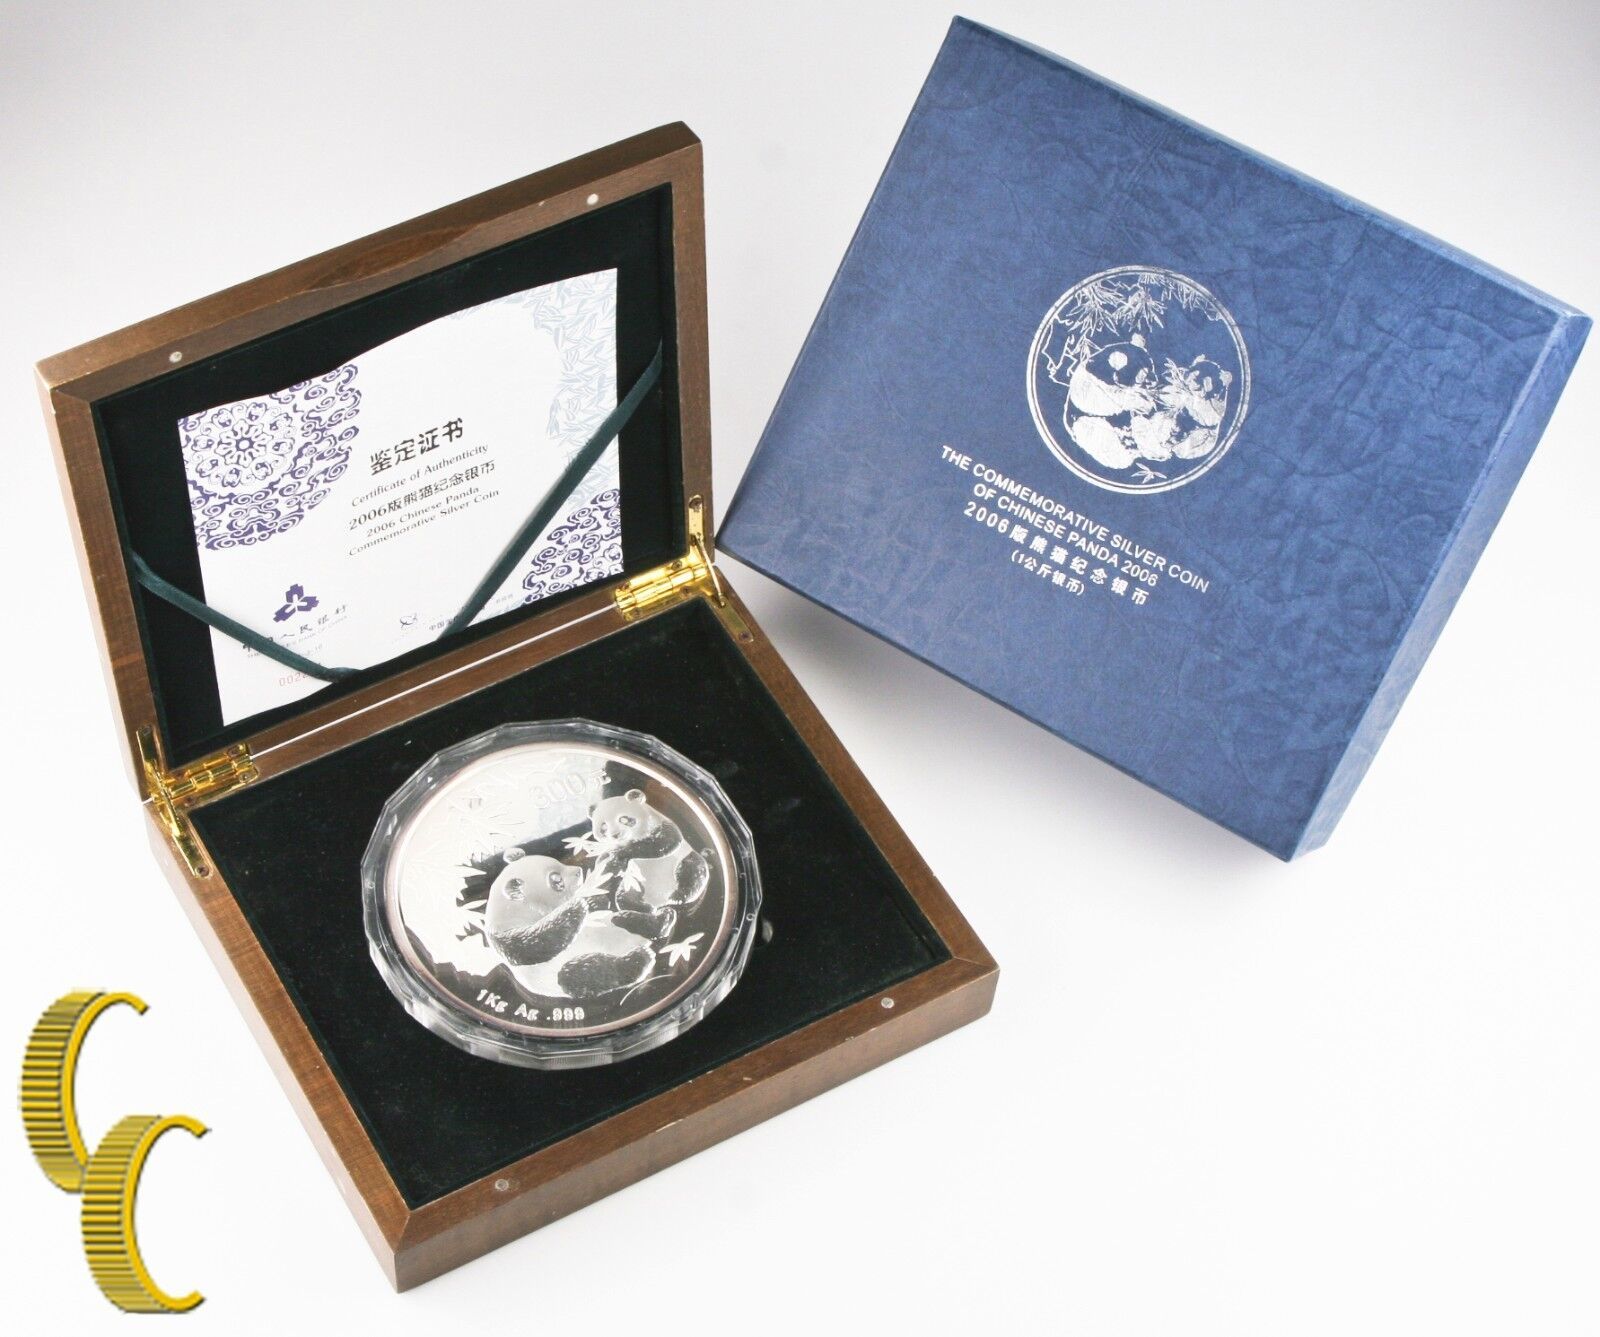 Primary image for 2006 China Kilogram Panda Coin (BU Proof) 999 Silver Kilo Kg Box & CoA KM#1662